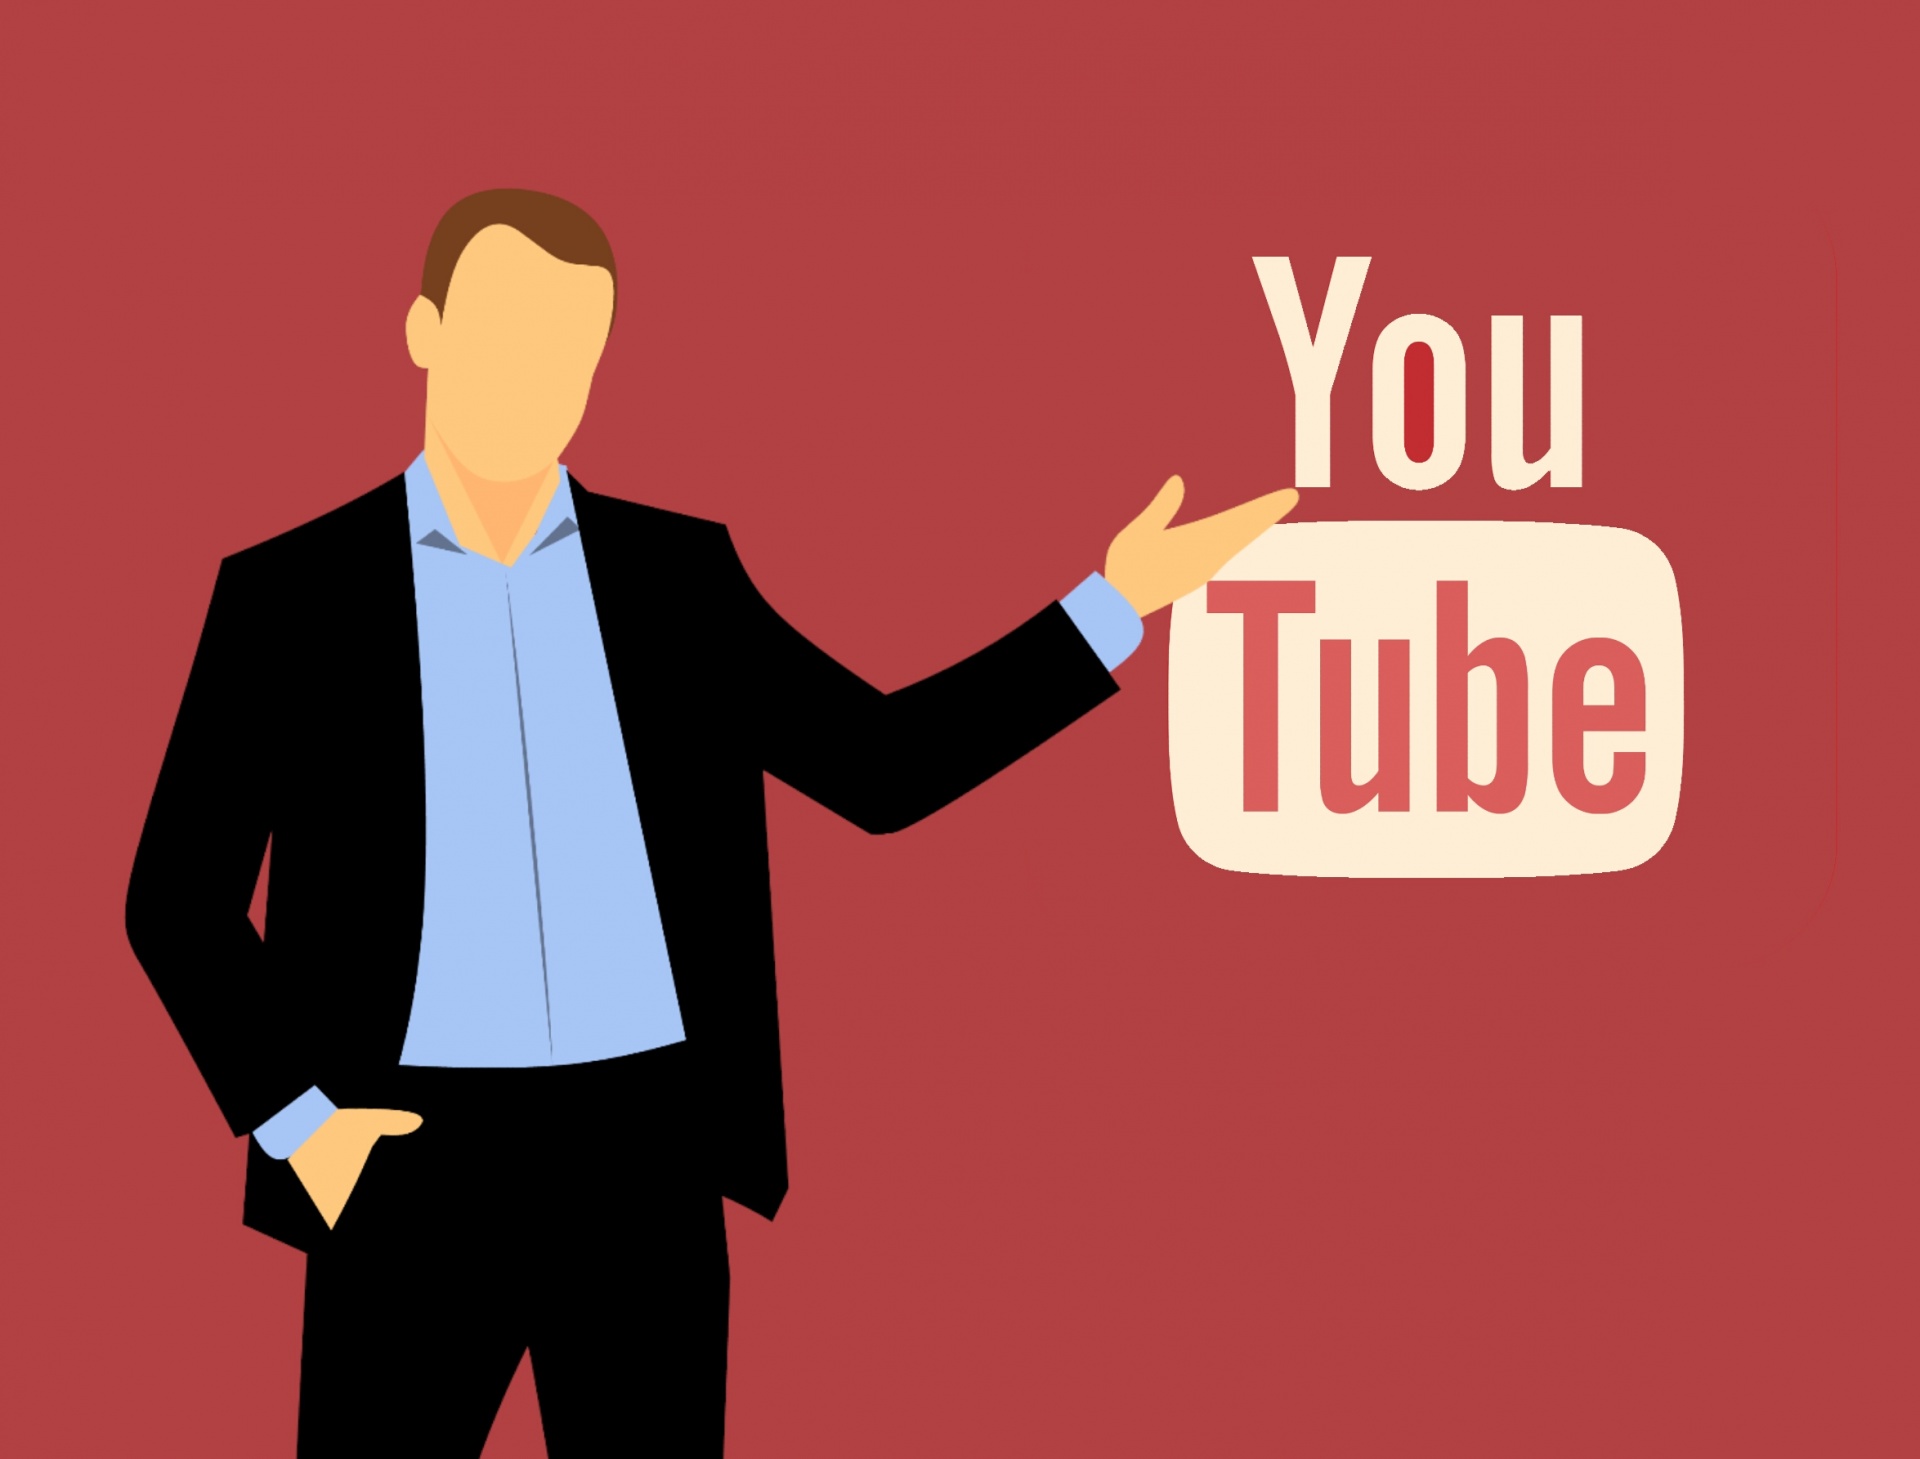 Icono de youtube, logo youtube, social